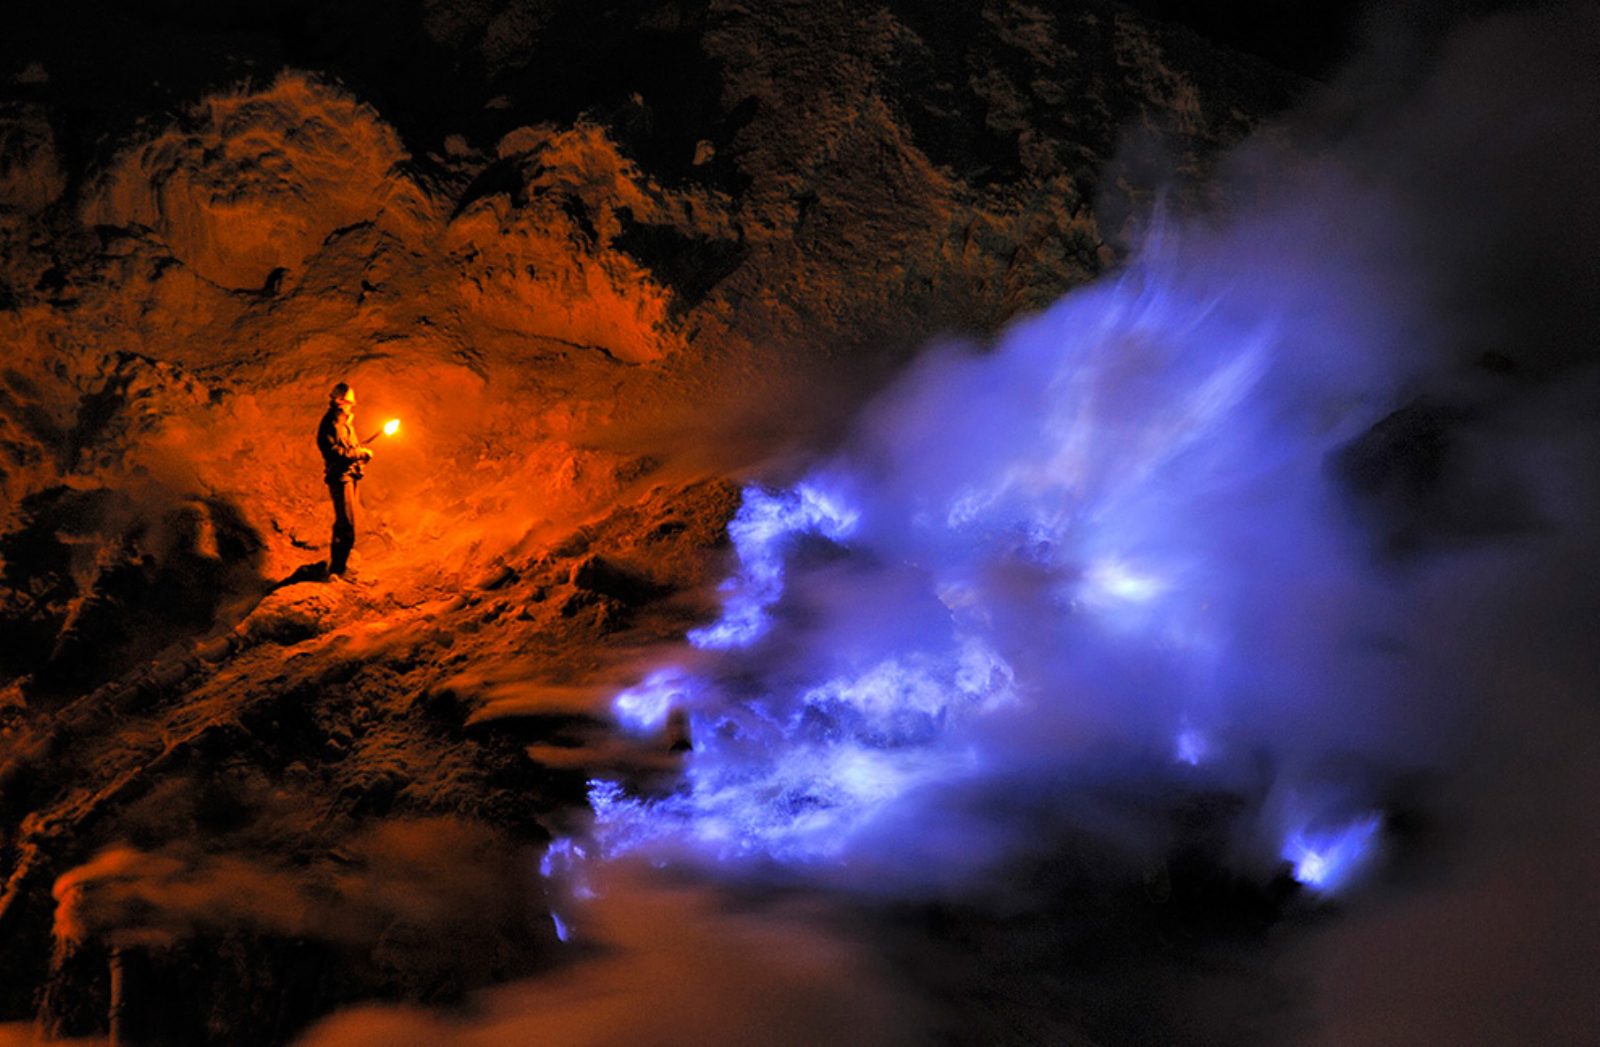 Також в кратері вулкана можна спостерігати ще одне цікаве явище - в деяких місцях на поверхню виходить і займається вулканічний сірчистий газ, таким чином утворюється слабке світіння блакитного кольору